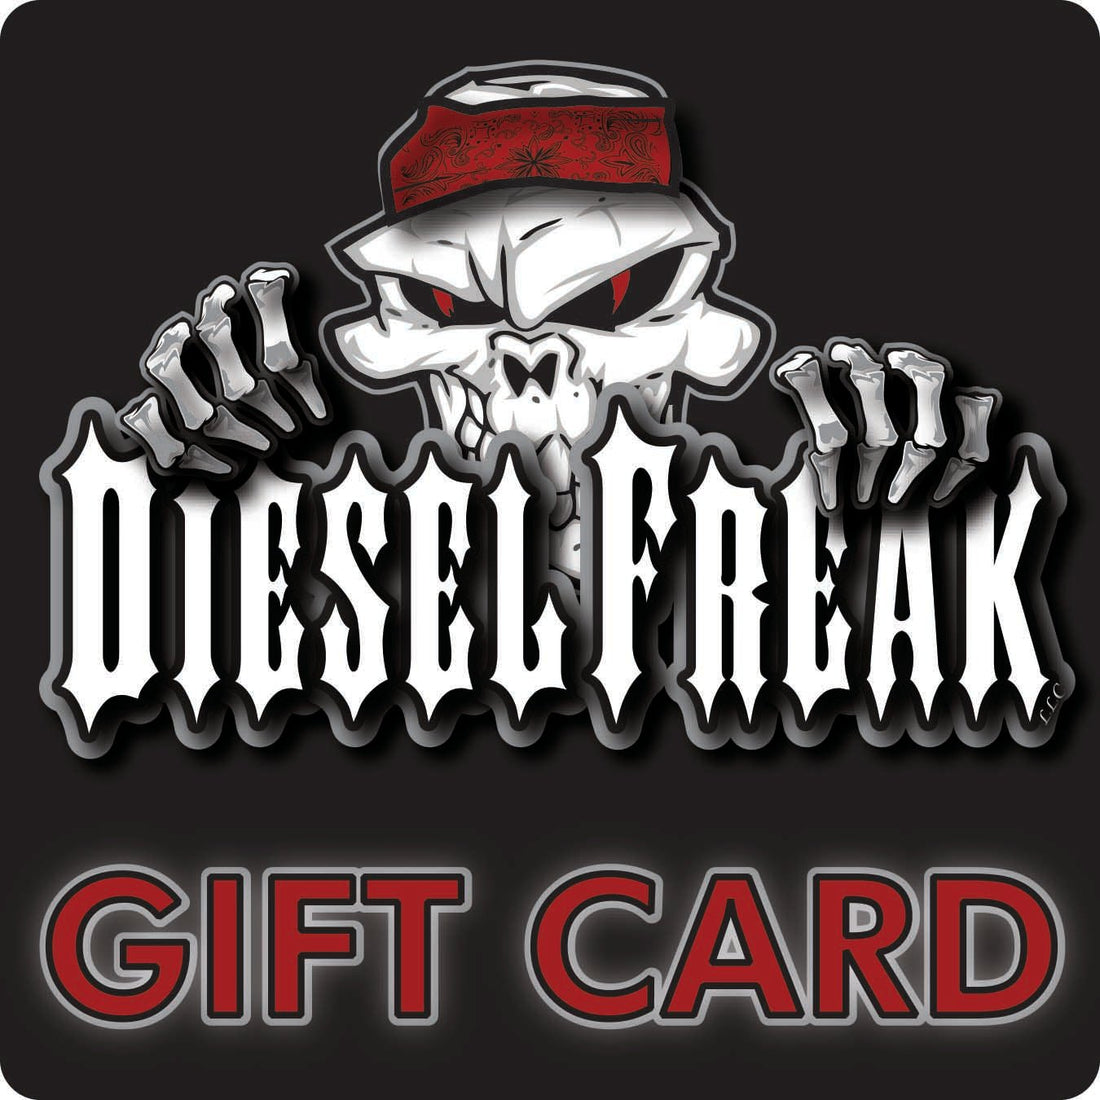 Diesel Freak Gift Card - Diesel Freak